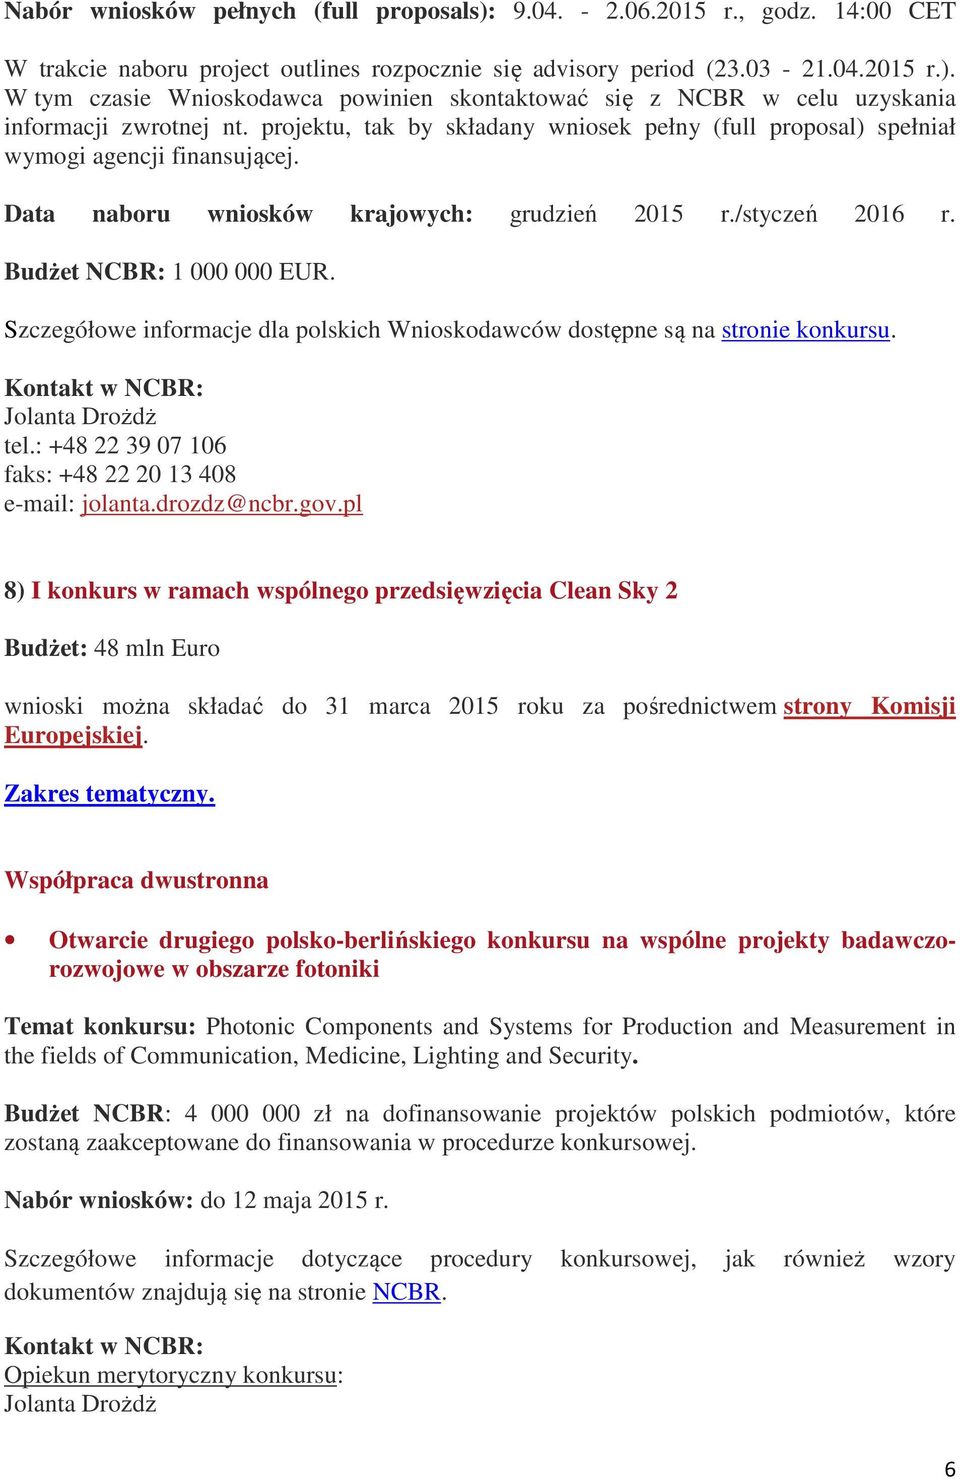 Szczegółowe informacje dla polskich Wnioskodawców dostępne są na stronie konkursu. Jolanta Drożdż tel.: +48 22 39 07 106 faks: +48 22 20 13 408 e-mail: jolanta.drozdz@ncbr.gov.